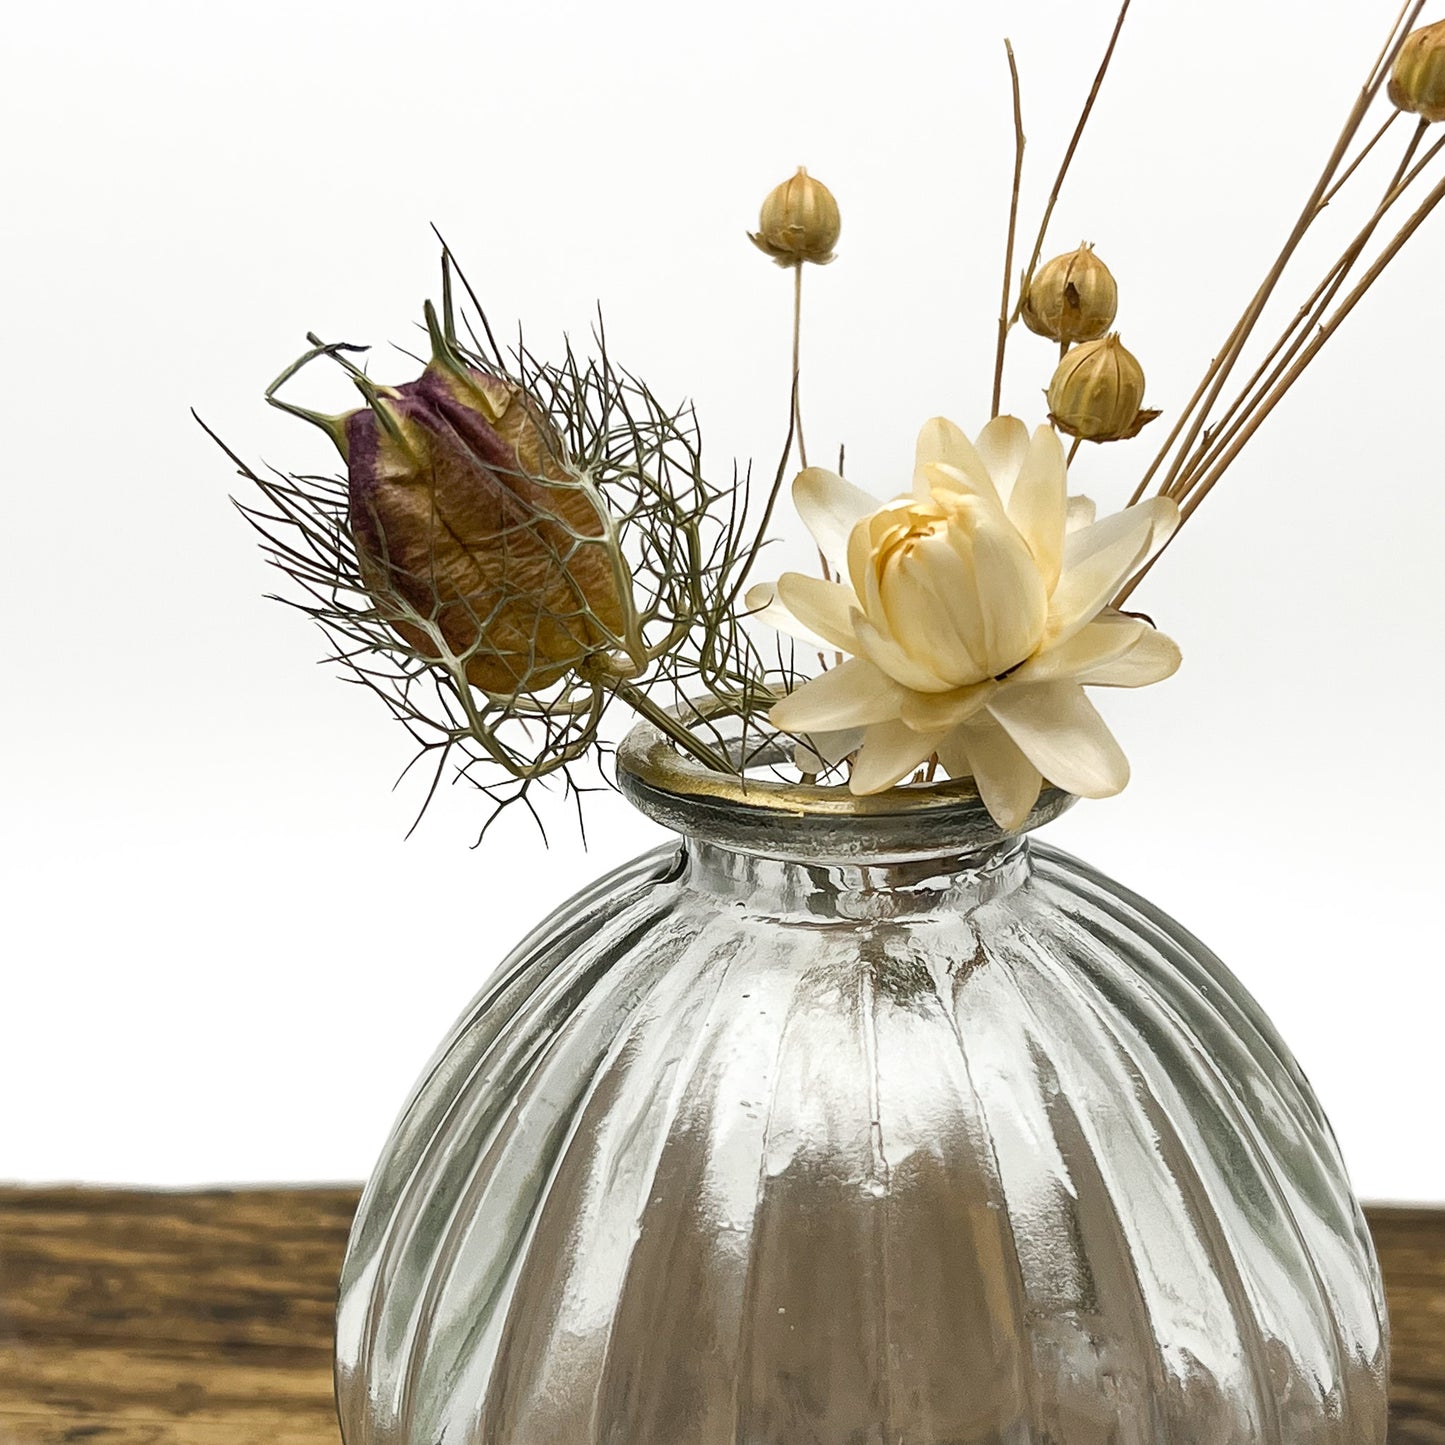 Duo de petits vases boules en verre recyclé translucide. Col des vases doré. Livrés avec fleurs séchées offertes